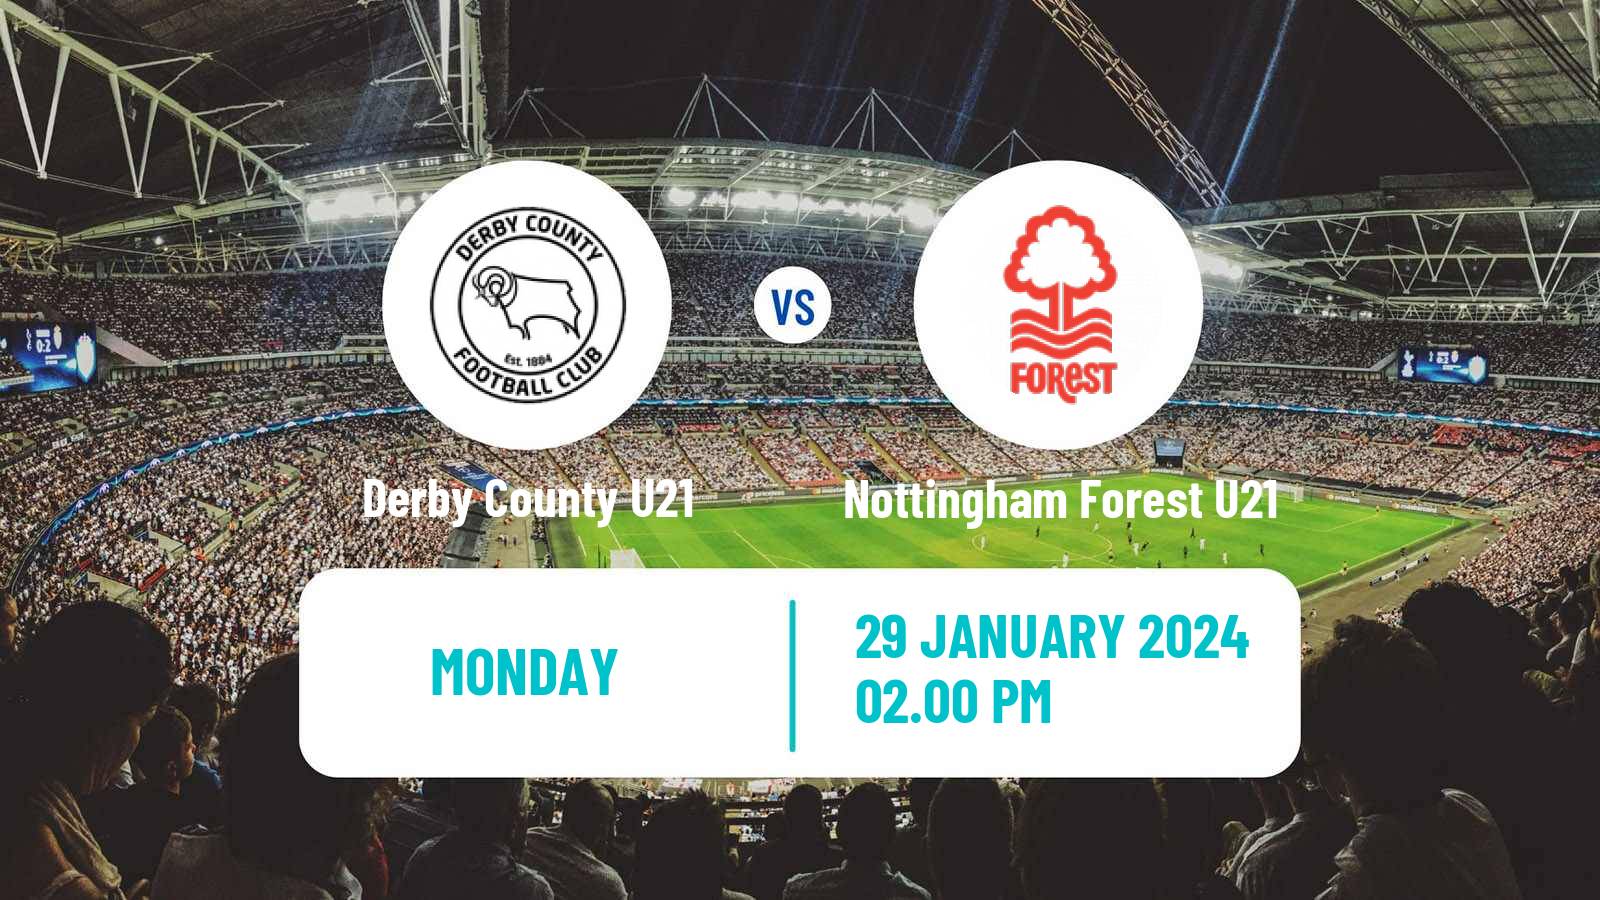 Soccer English Premier League 2 Derby County U21 - Nottingham Forest U21